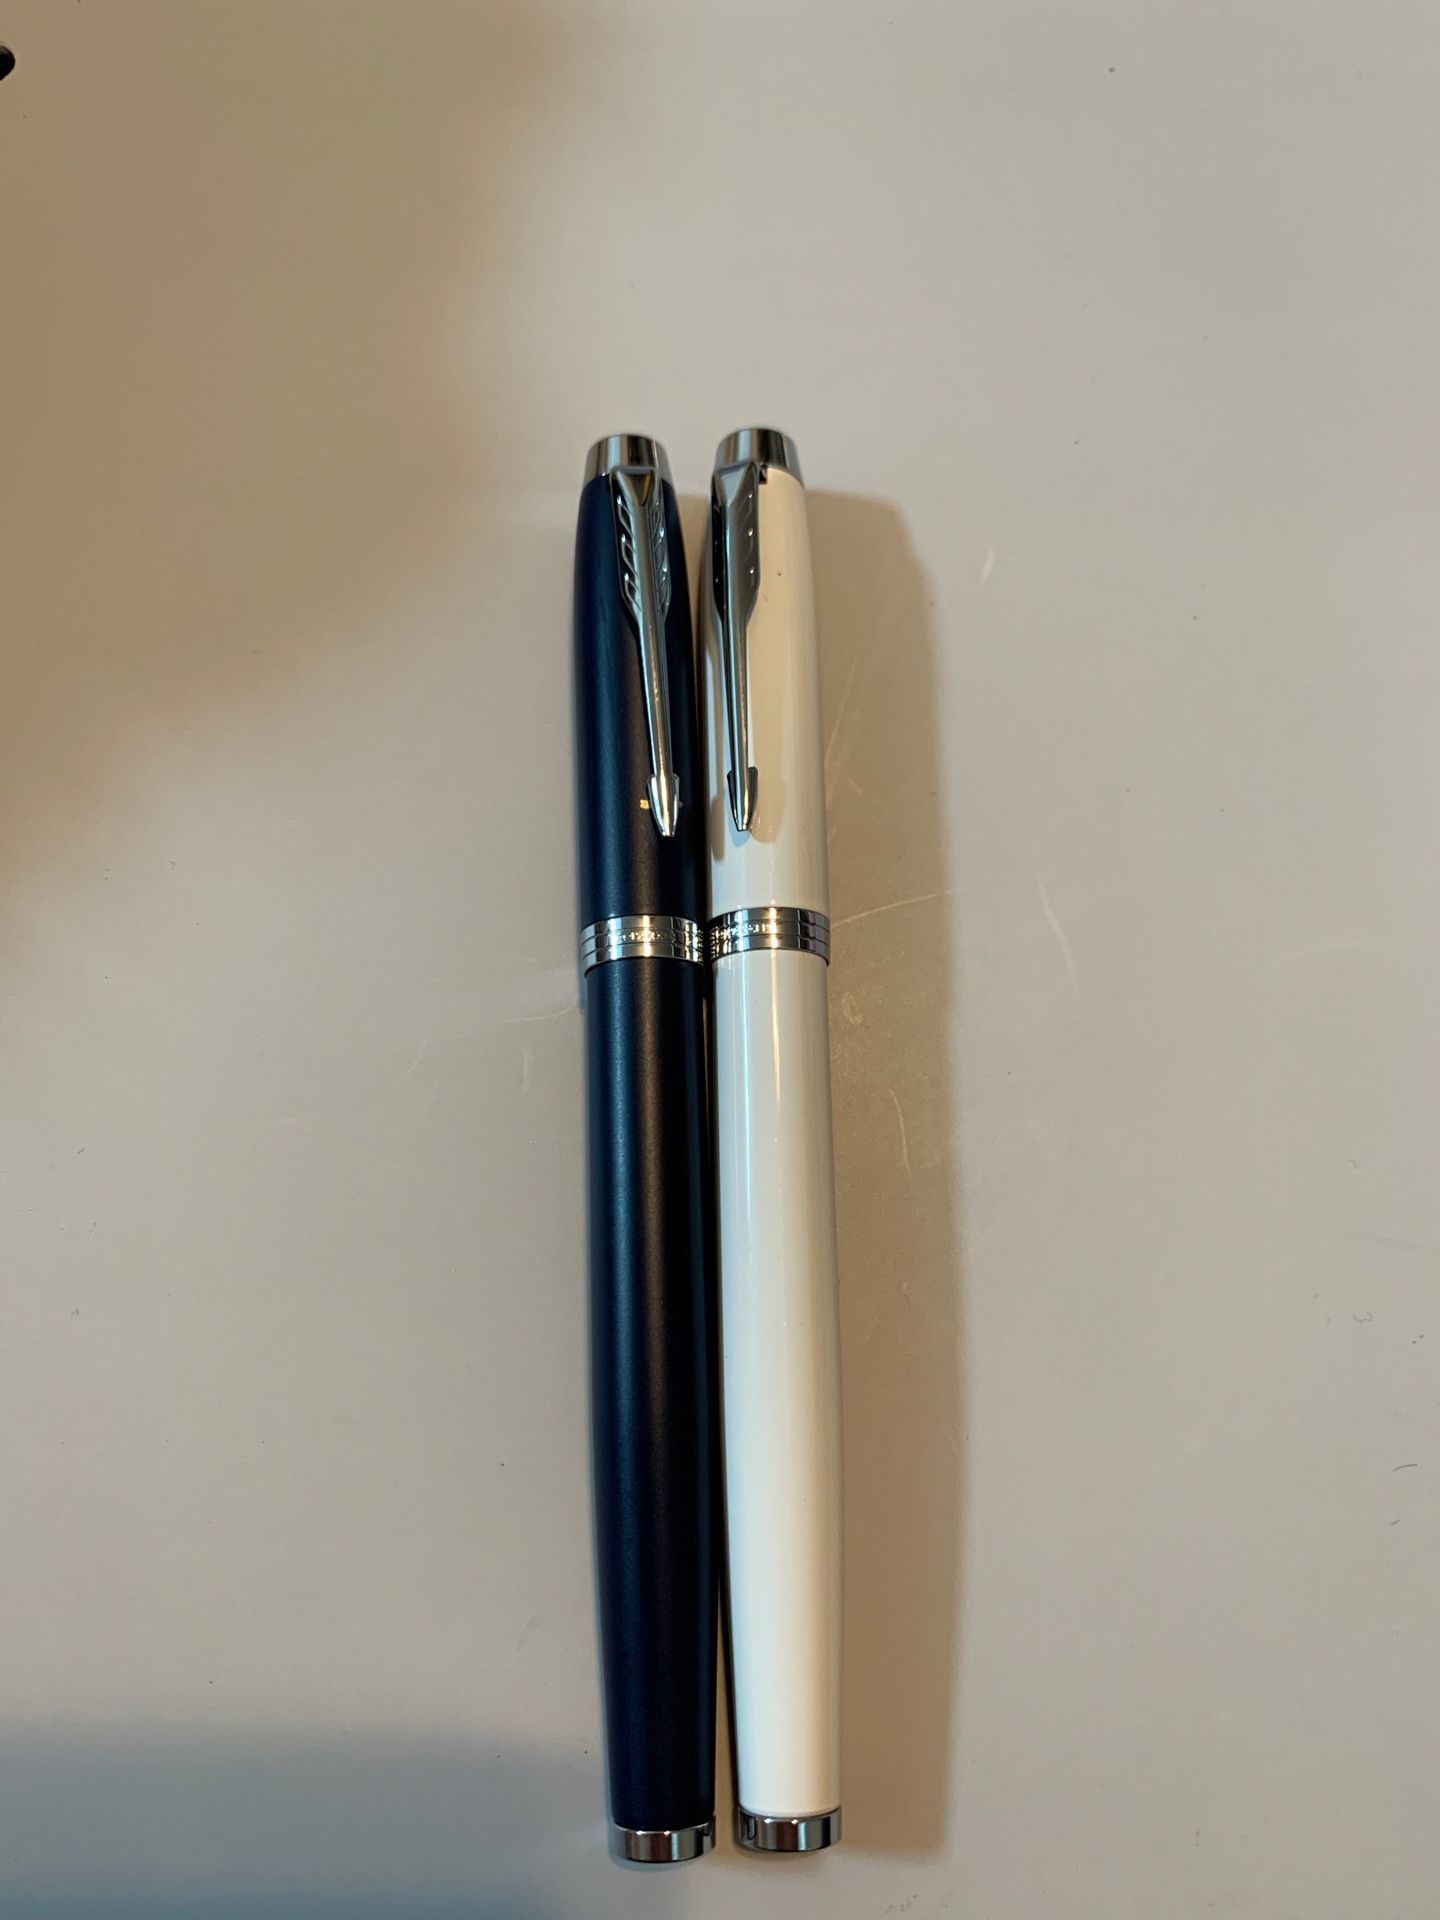 Parker Rollerball pens